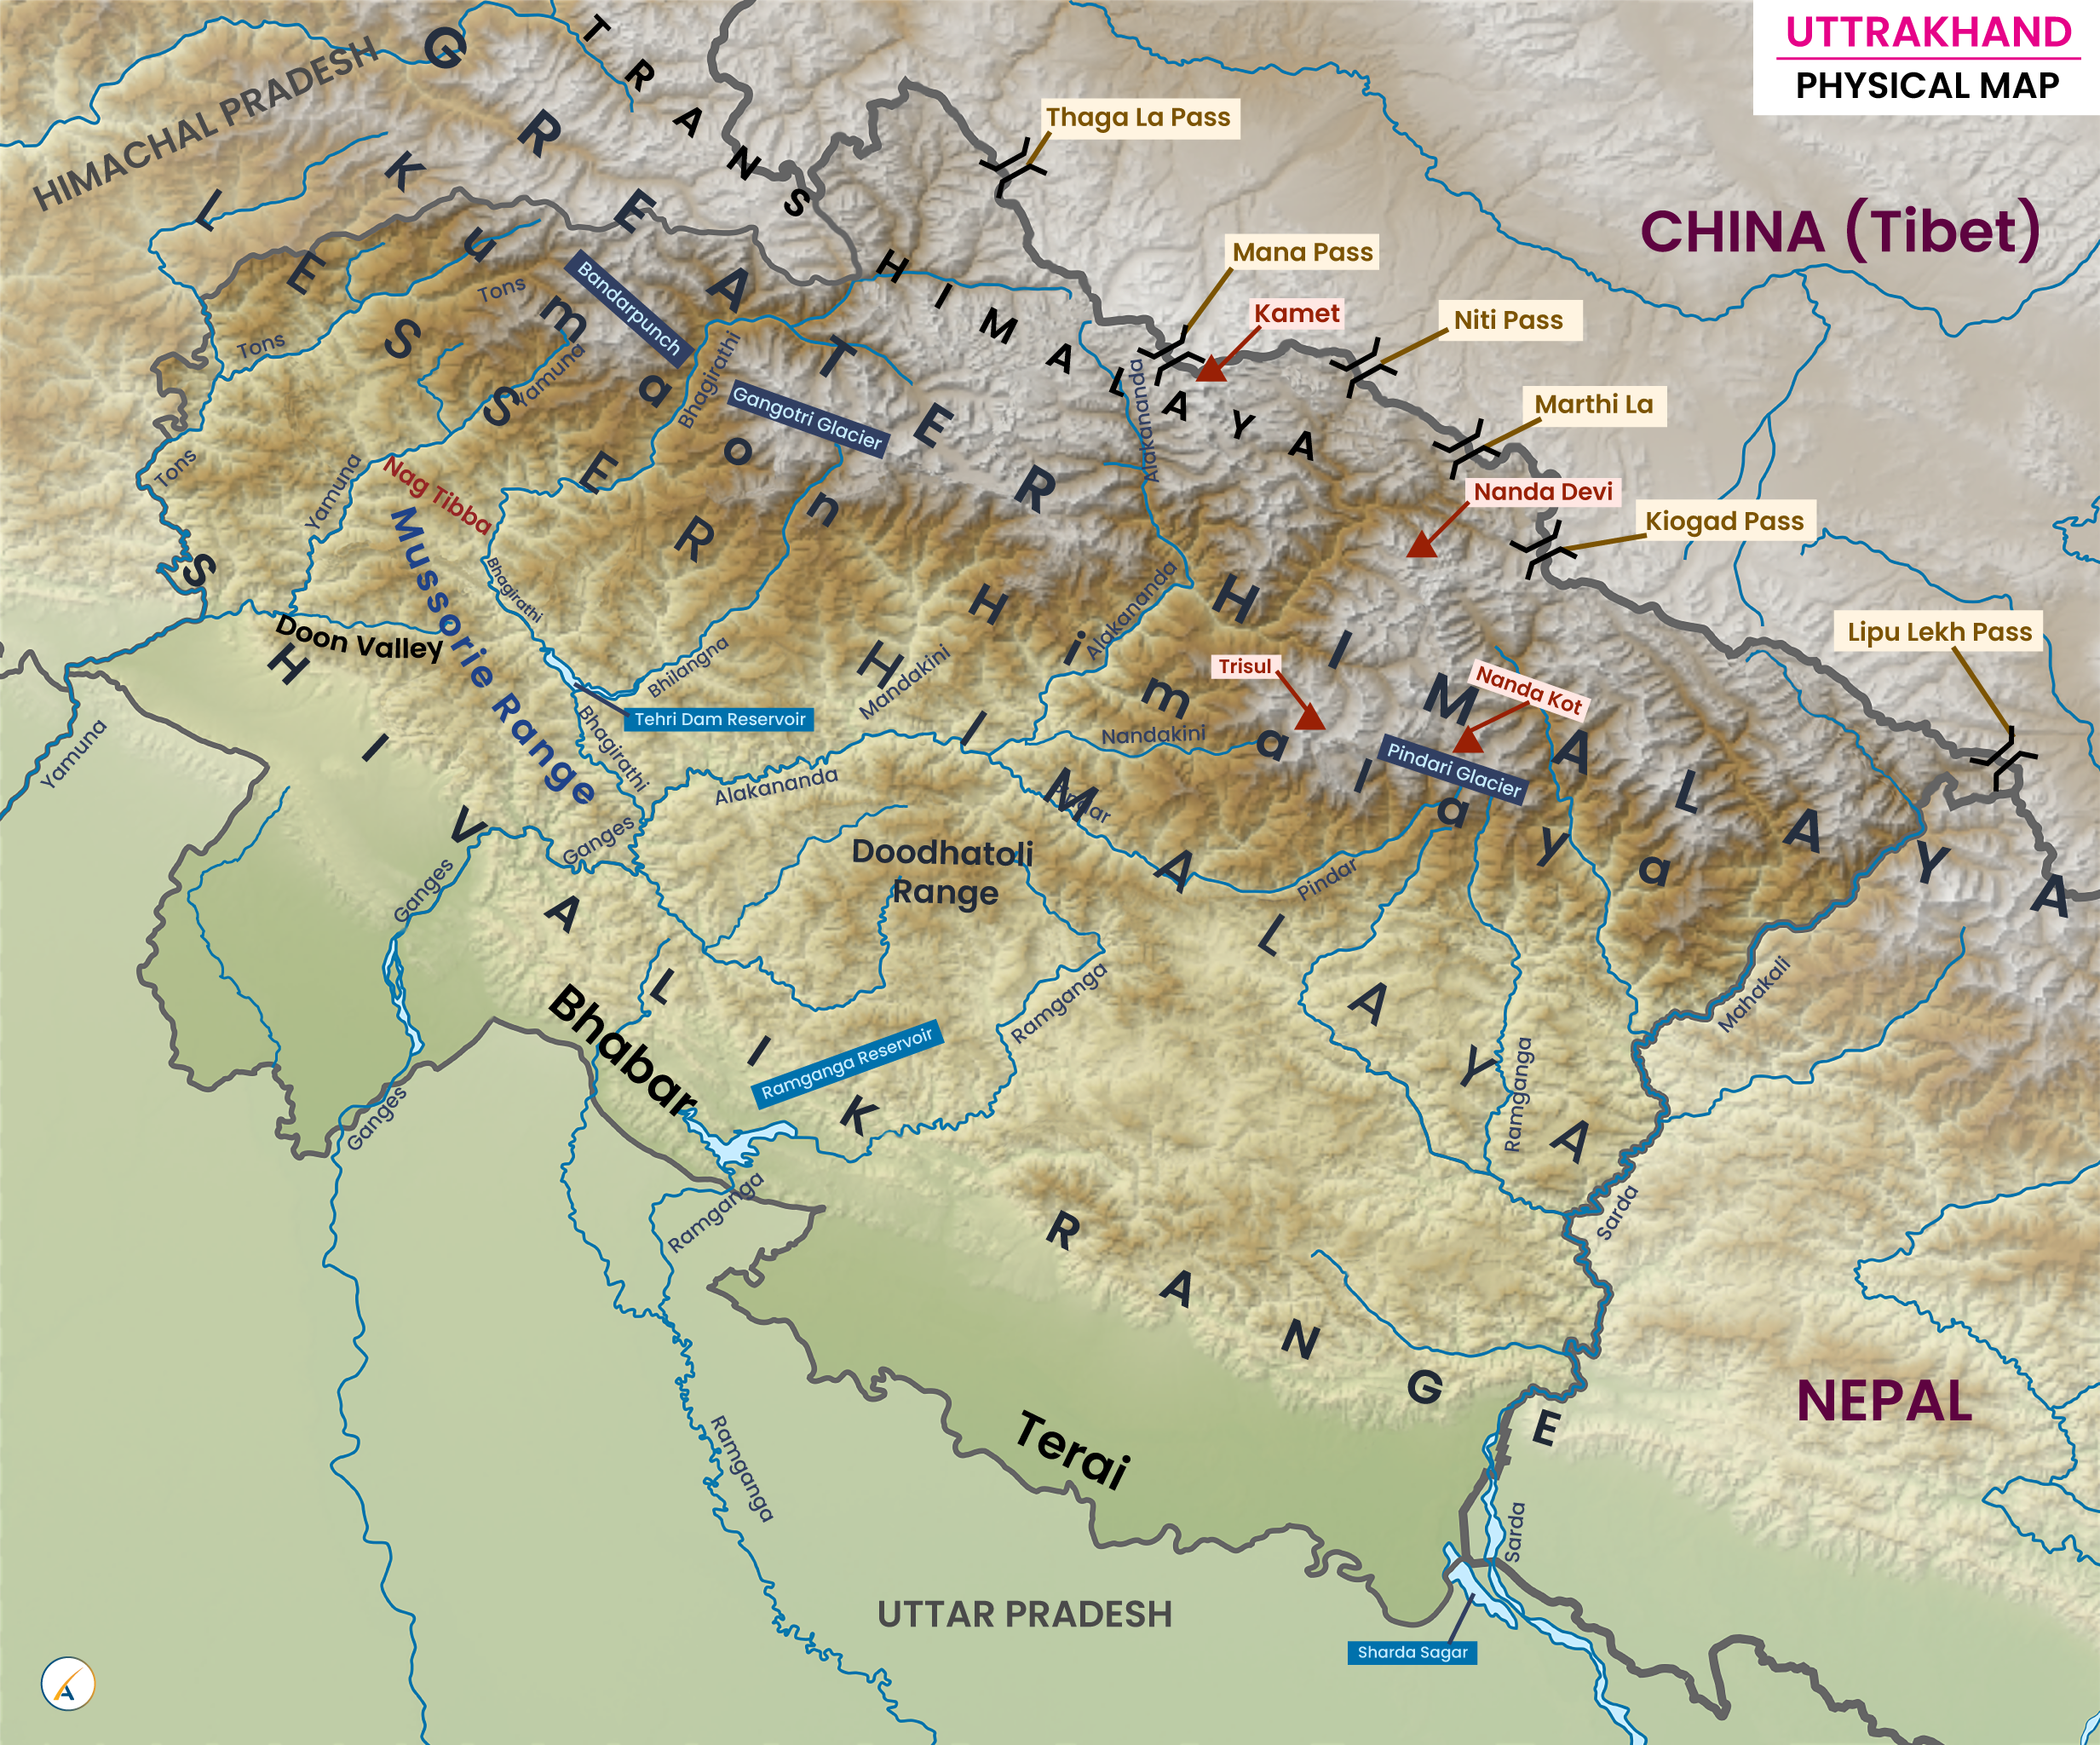 Uttarakhand Physical Map